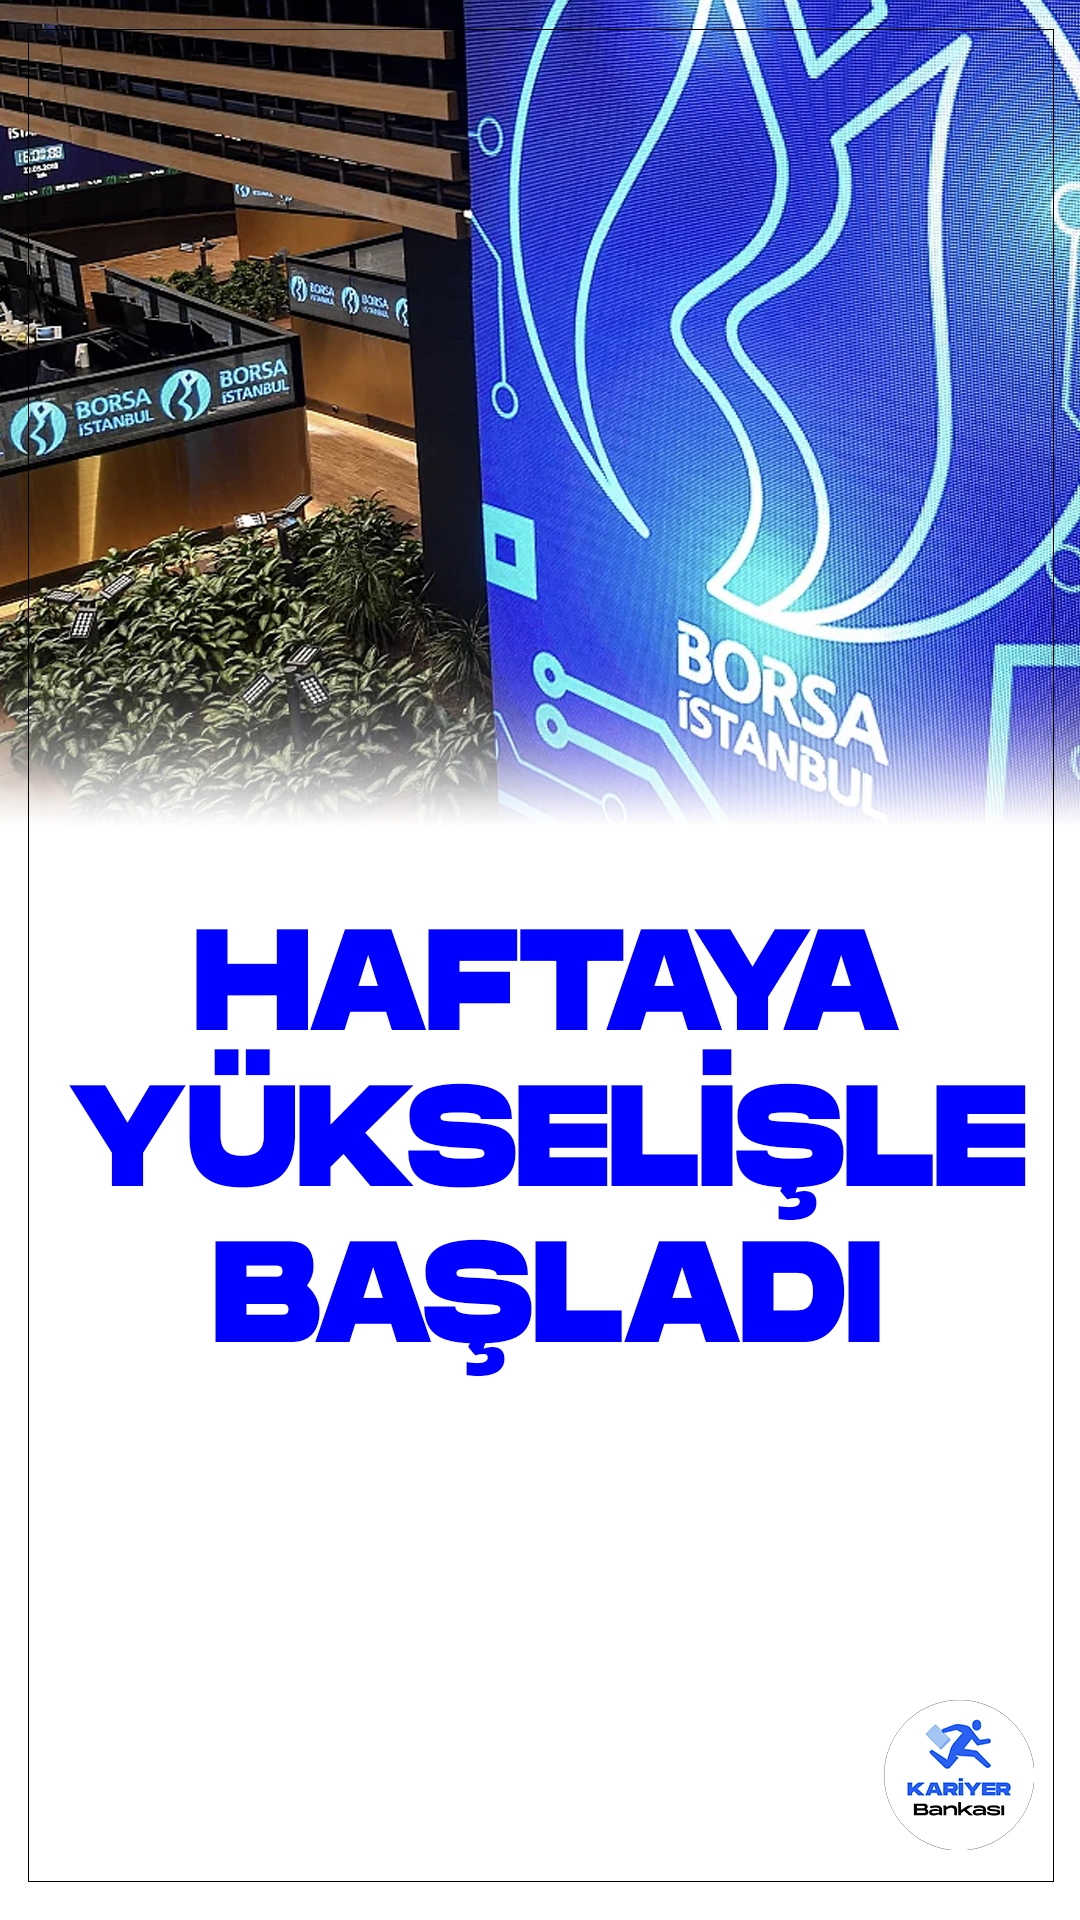 Borsa İstanbul, Haftaya Güçlü Yükselişle Başladı.Borsa İstanbul'da işlem gören BIST 100 endeksi, haftaya yüzde 2,28'lik bir yükselişle 9.363,89 puandan başladı. Açılışta BIST 100 endeksi, önceki kapanışa göre 208,57 puan ve yüzde 2,28 değer kazanarak 9.363,89 puana yükseldi.